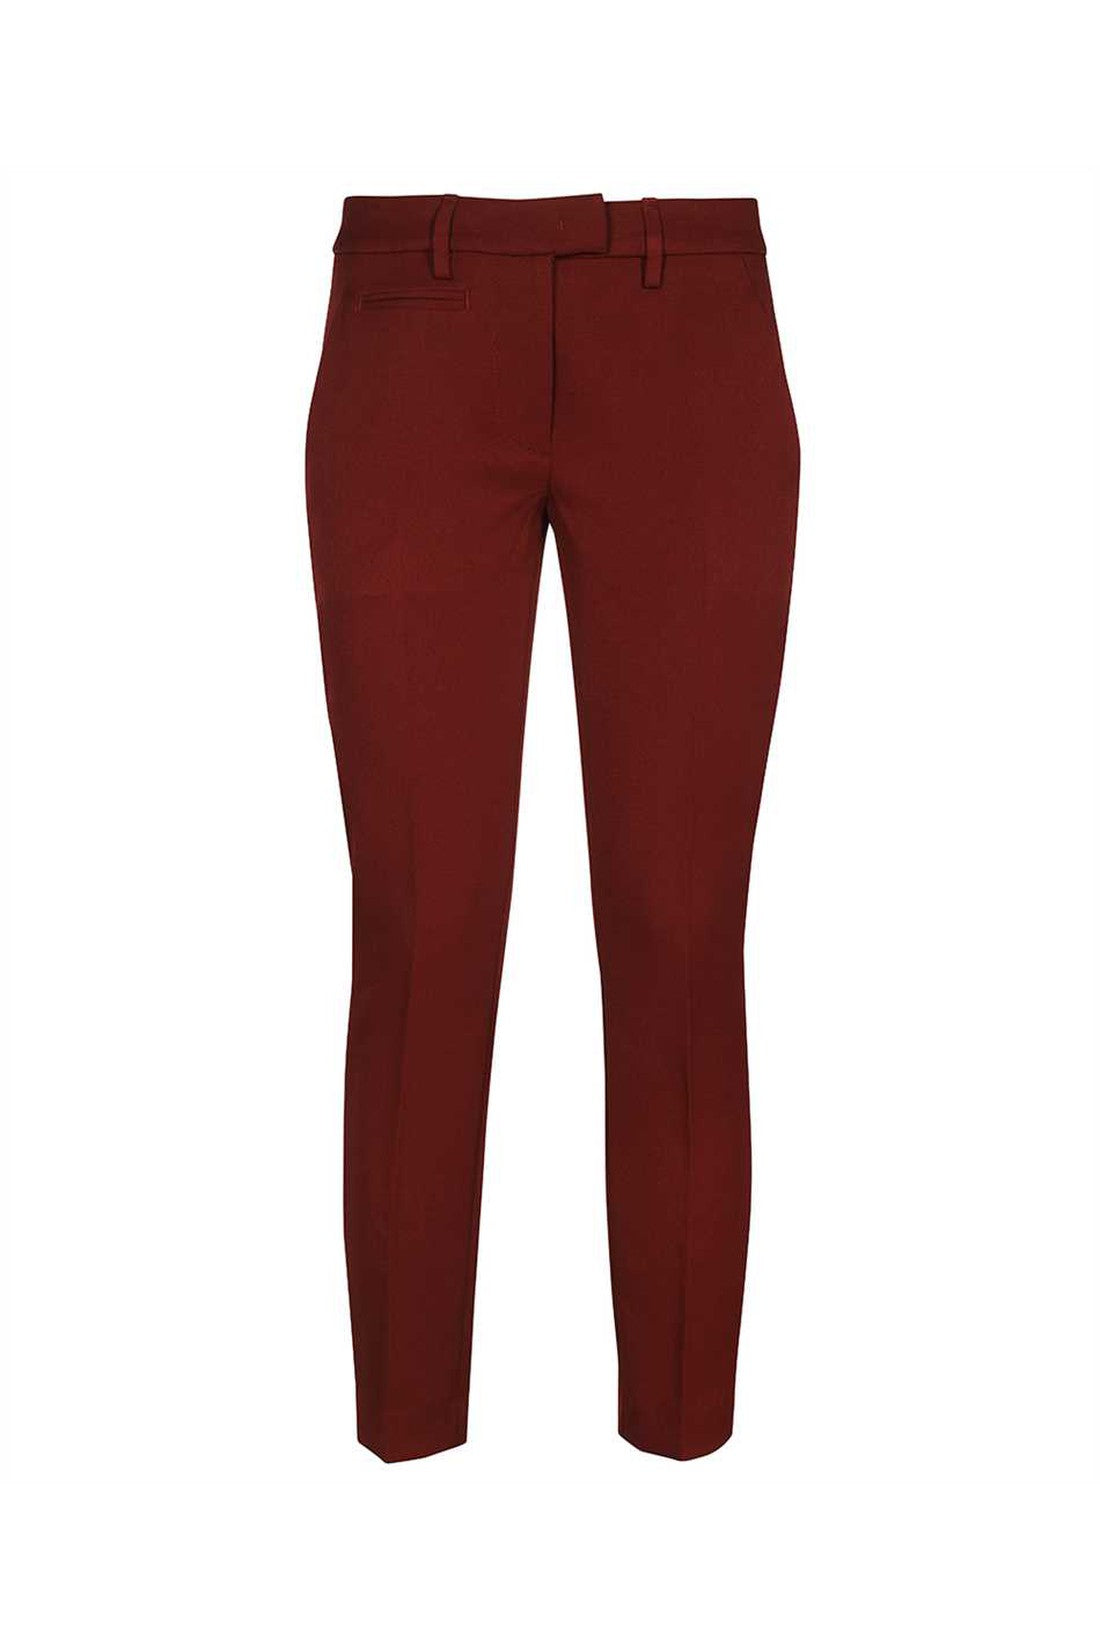 Technical fabric pants-Hosen-Dondup-OUTLET-SALE-25-ARCHIVIST